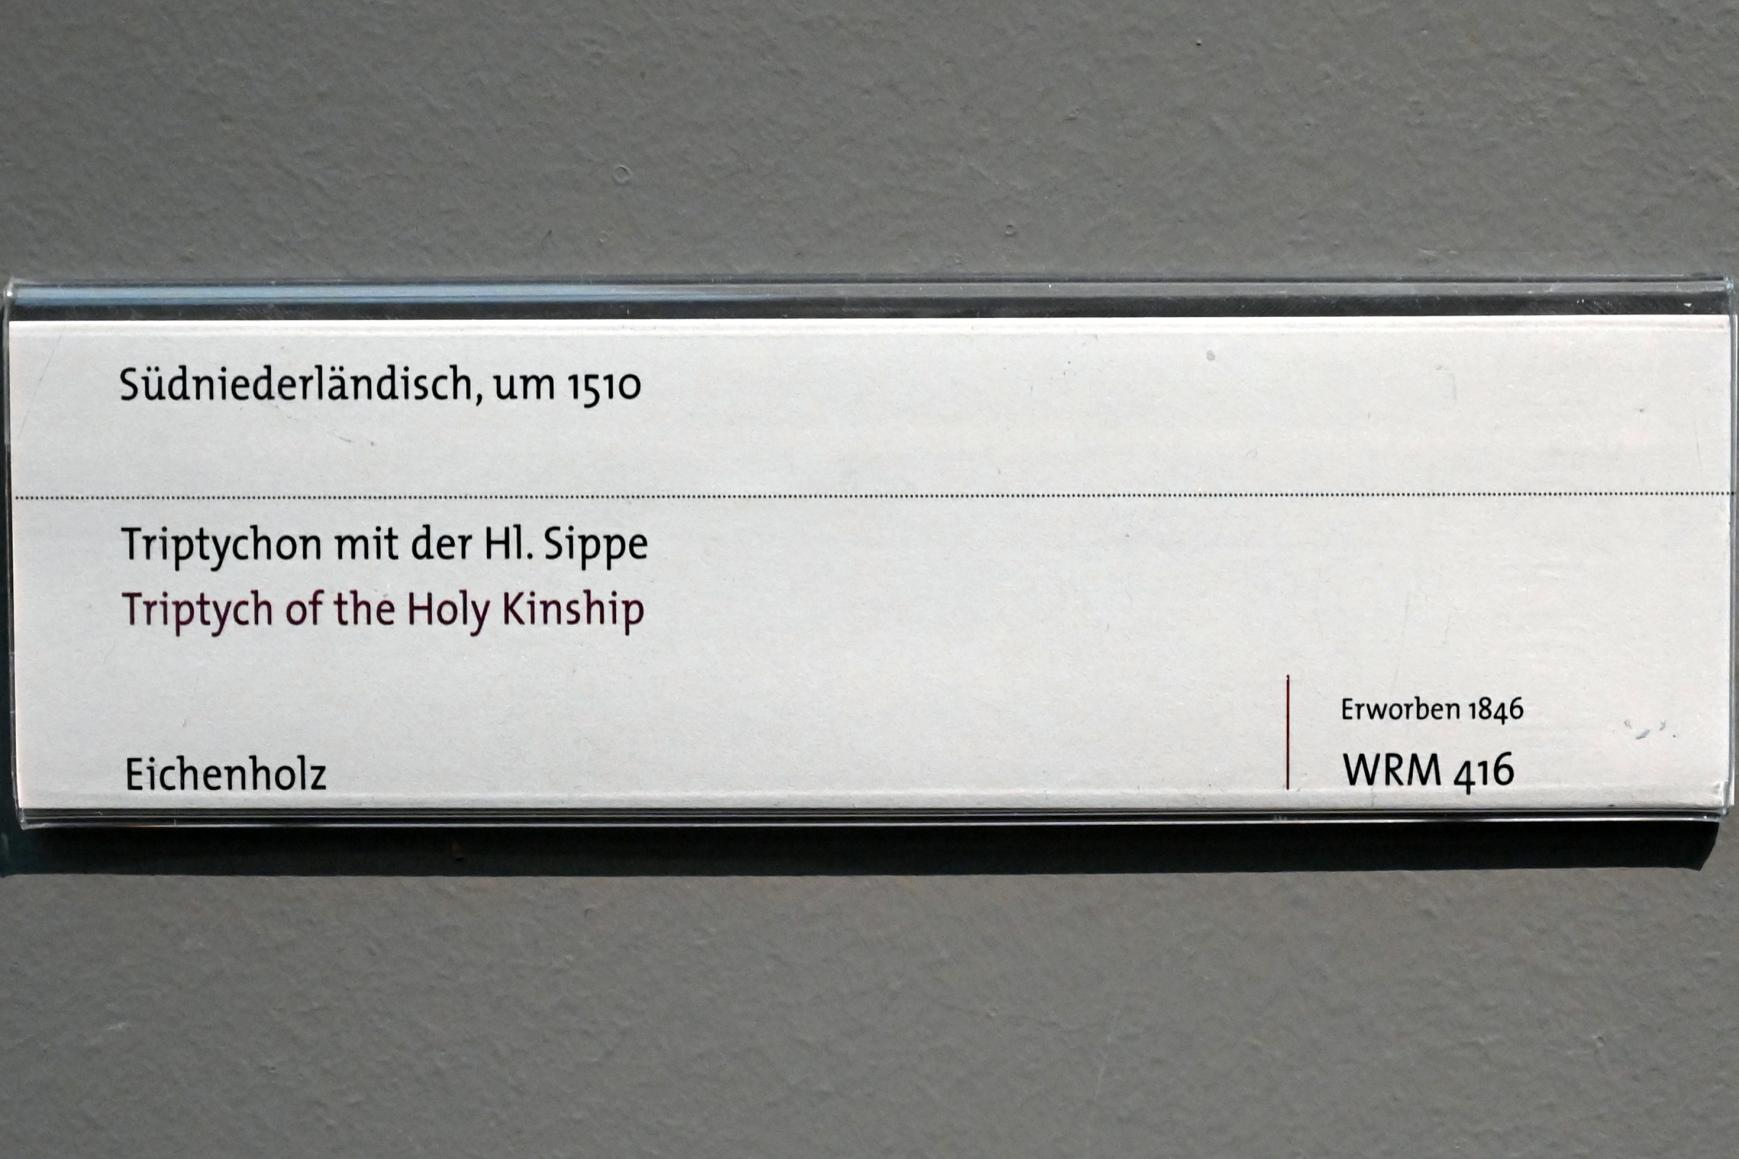 Triptychon mit der Hl. Sippe, Köln, Wallraf-Richartz-Museum, Mittelalter - Saal 2, um 1510, Bild 5/5